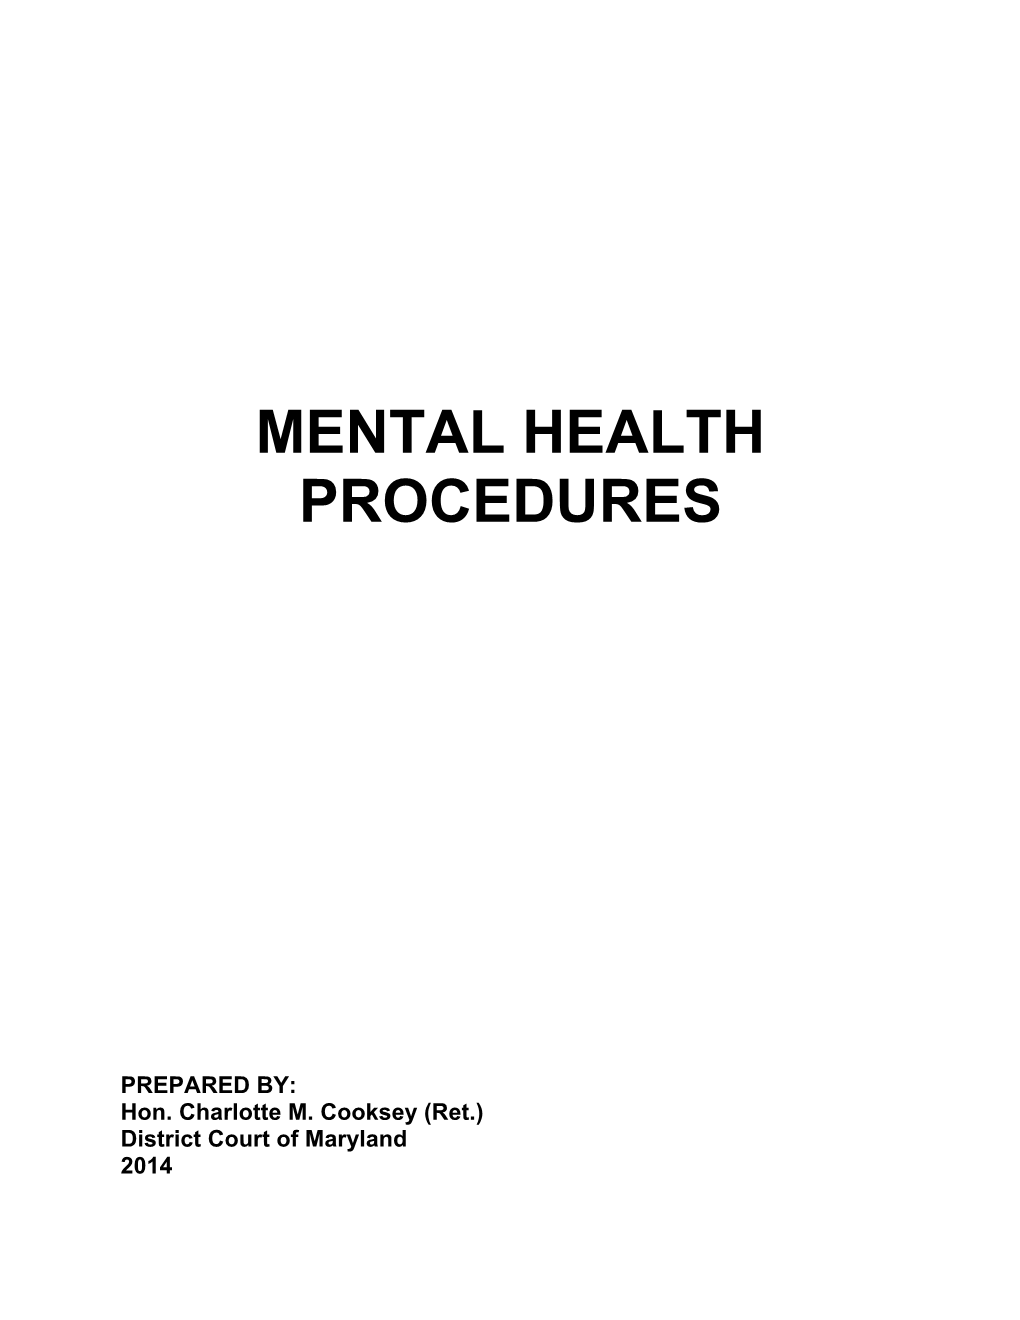 Mental Health Procedures